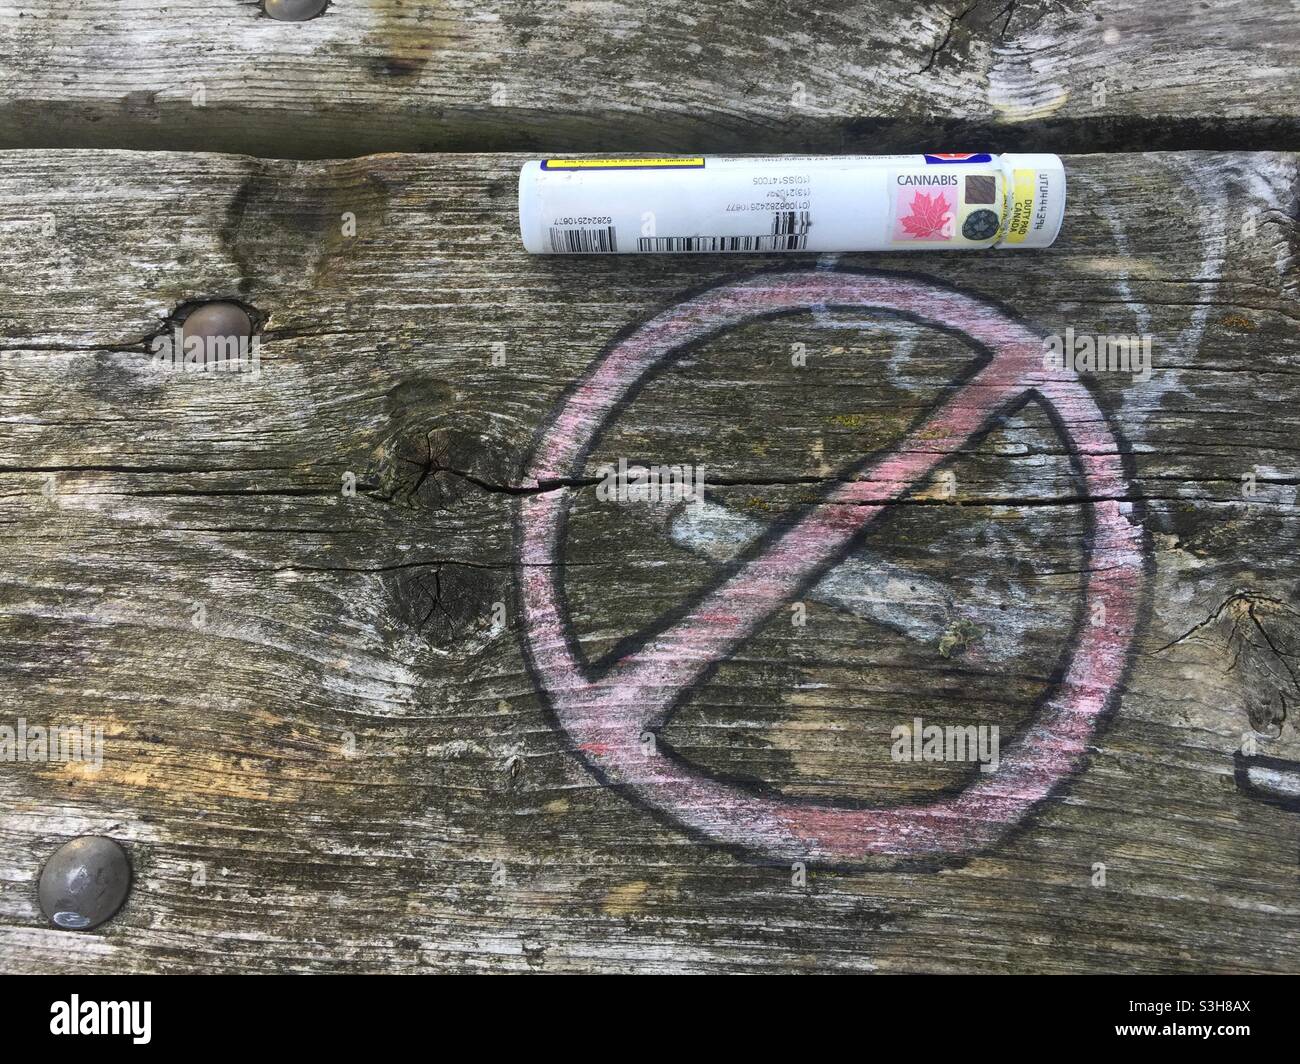 Una fiala di cannabis accanto al simbolo di divieto di fumo. Suggerimento, forse non intenzionale, fumare le cose giuste - erbacce, CBD, smussate - non sigarette di tabacco cancerogene. Foto Stock